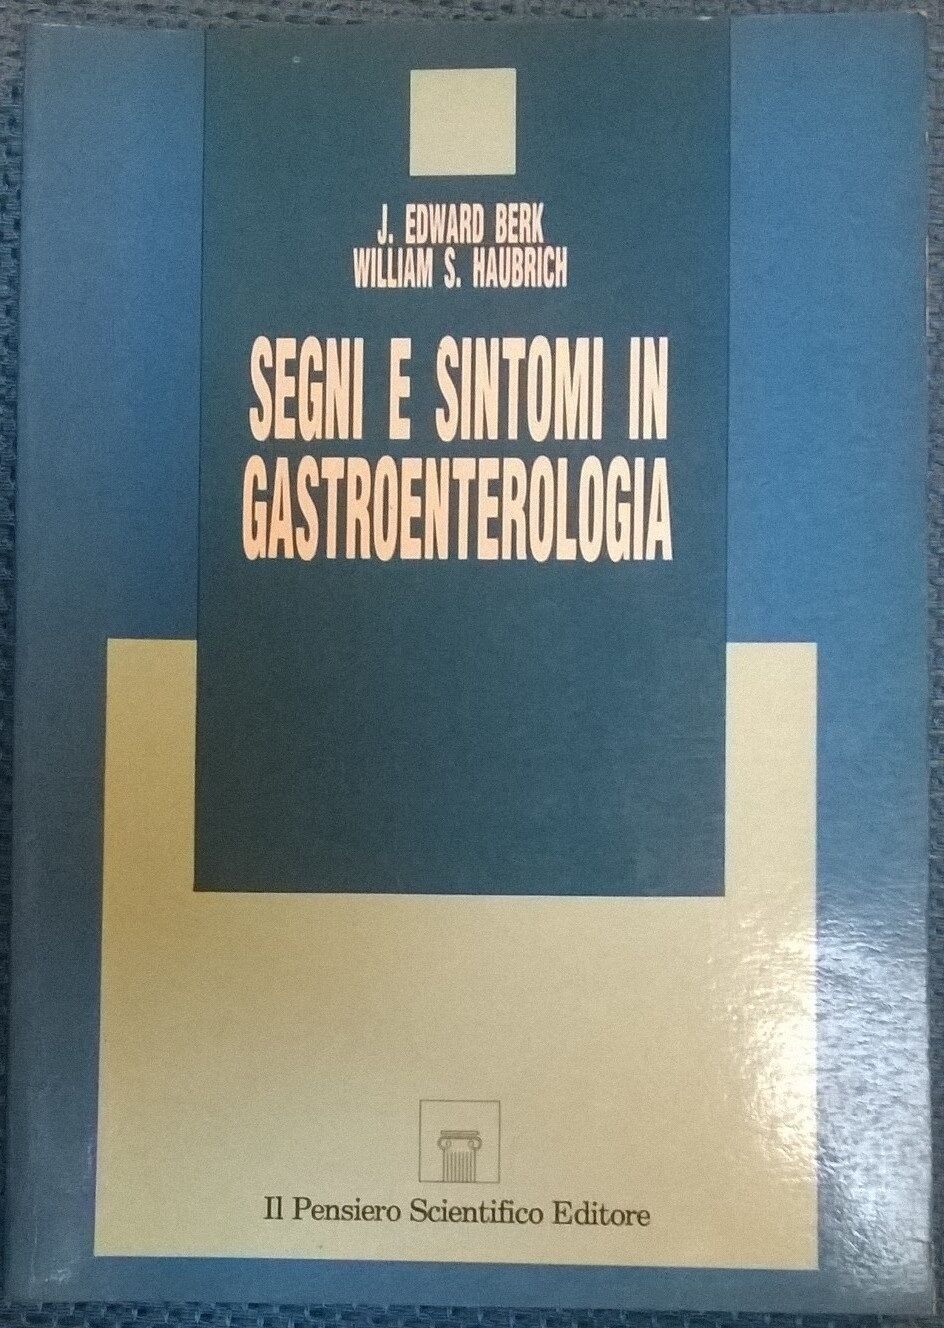 Segni e sintomi in gastroenterologia - Berk, Haubrick - Il pens. scient., 1992-L